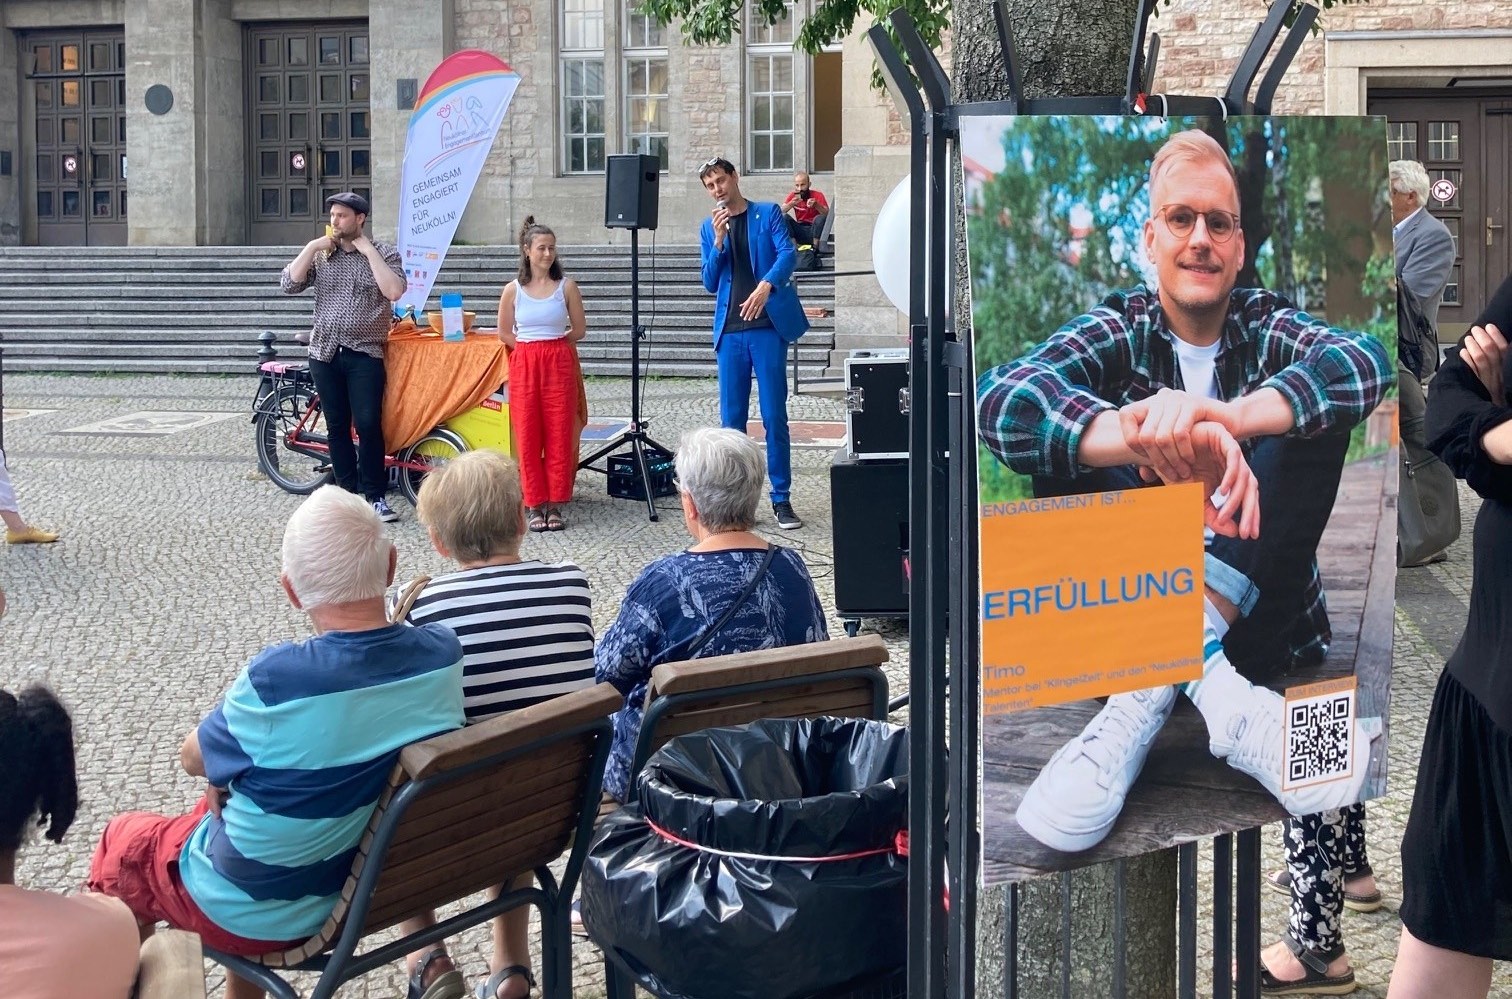 Plakat mit Portrait auf der rechten Bildseite im Vordergrund, im Hintergrund Bezirksbürgermeister Martin Hikel mit Patin im Gespräch